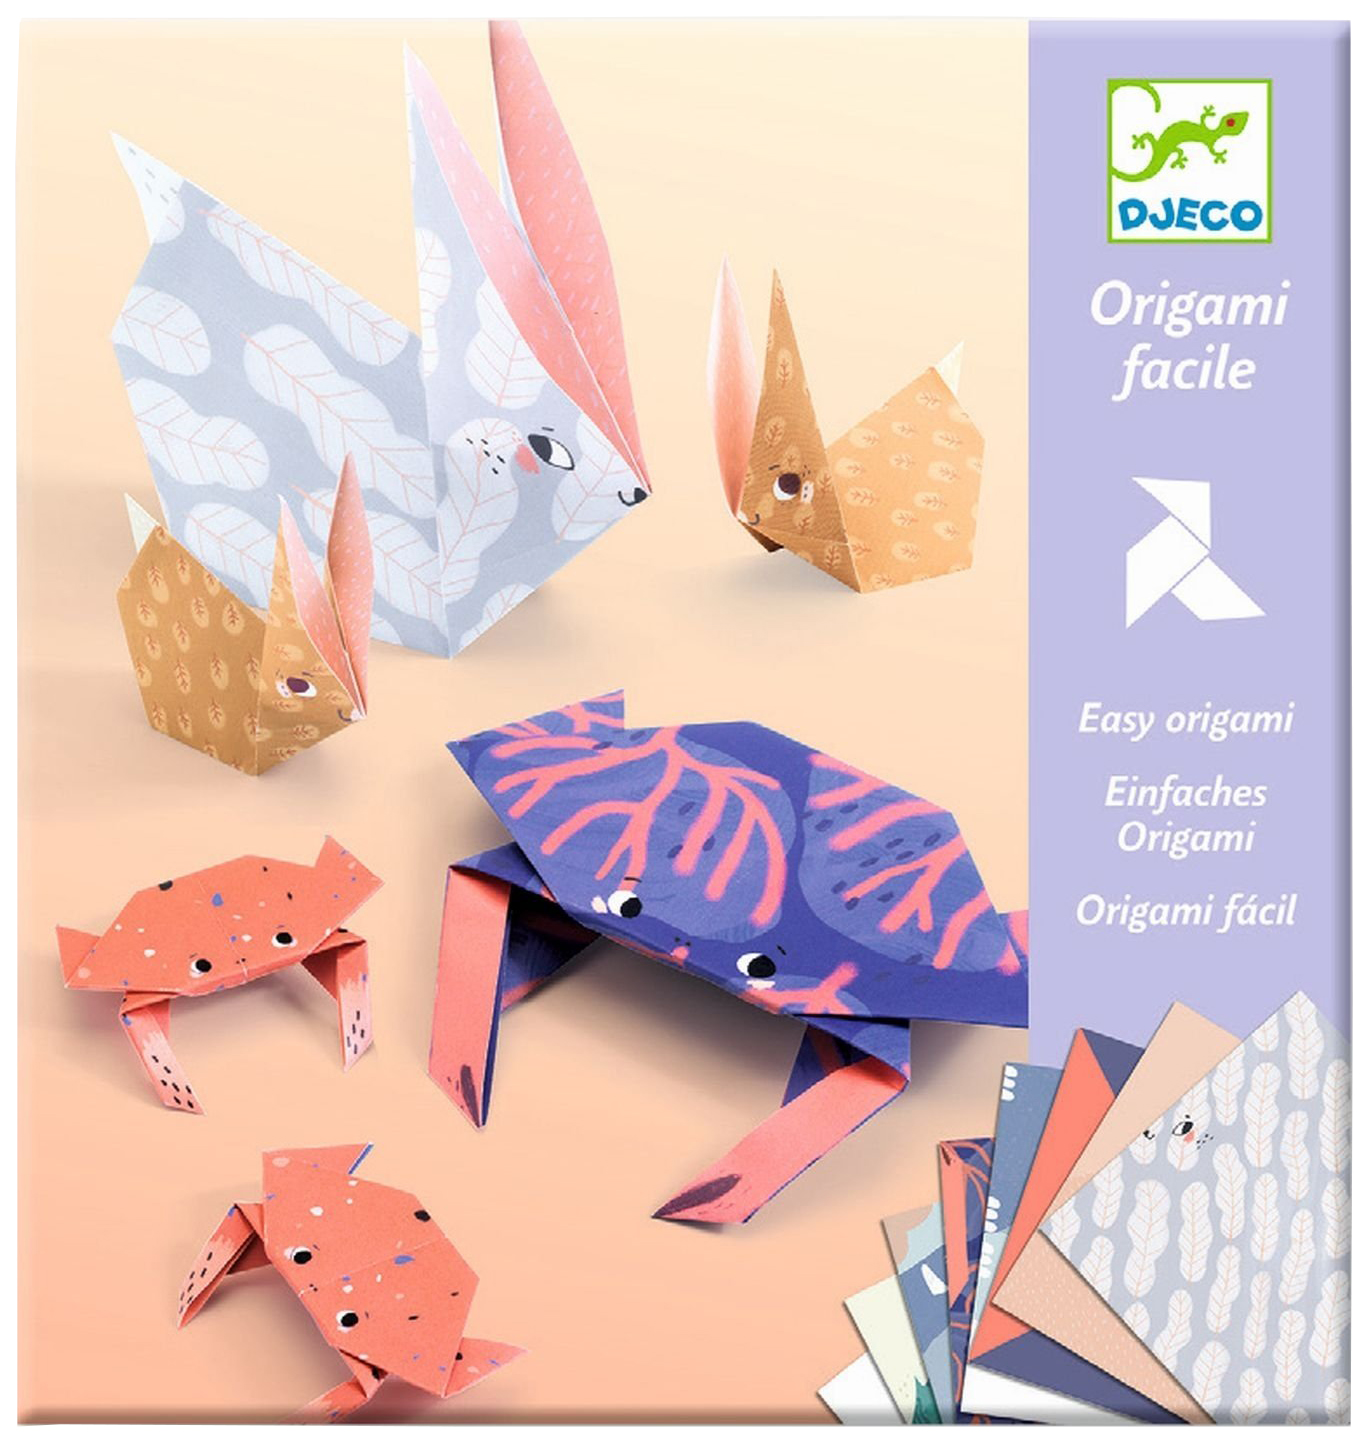 Оригами Djeco Семьи